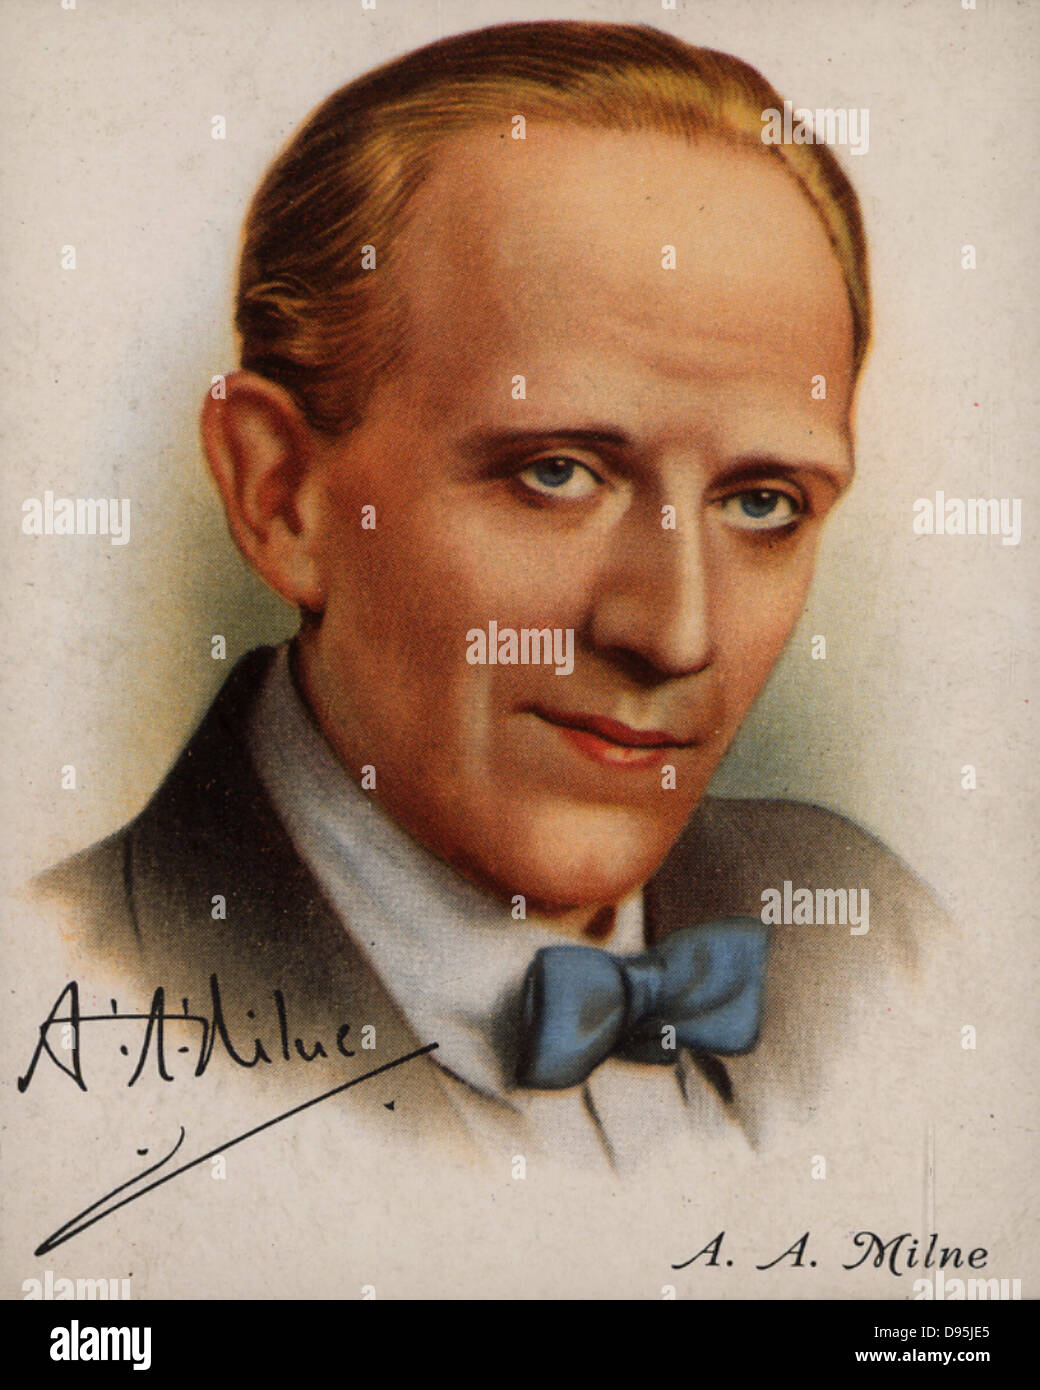 Alan Alexander (AA) Milne (1882-1956), autore inglese più noto per la sua creazione di "Winnie-the-Pooh" (1926). Da una serie di carte di 'celebri autori britannici' (Londra, 1937). Foto Stock